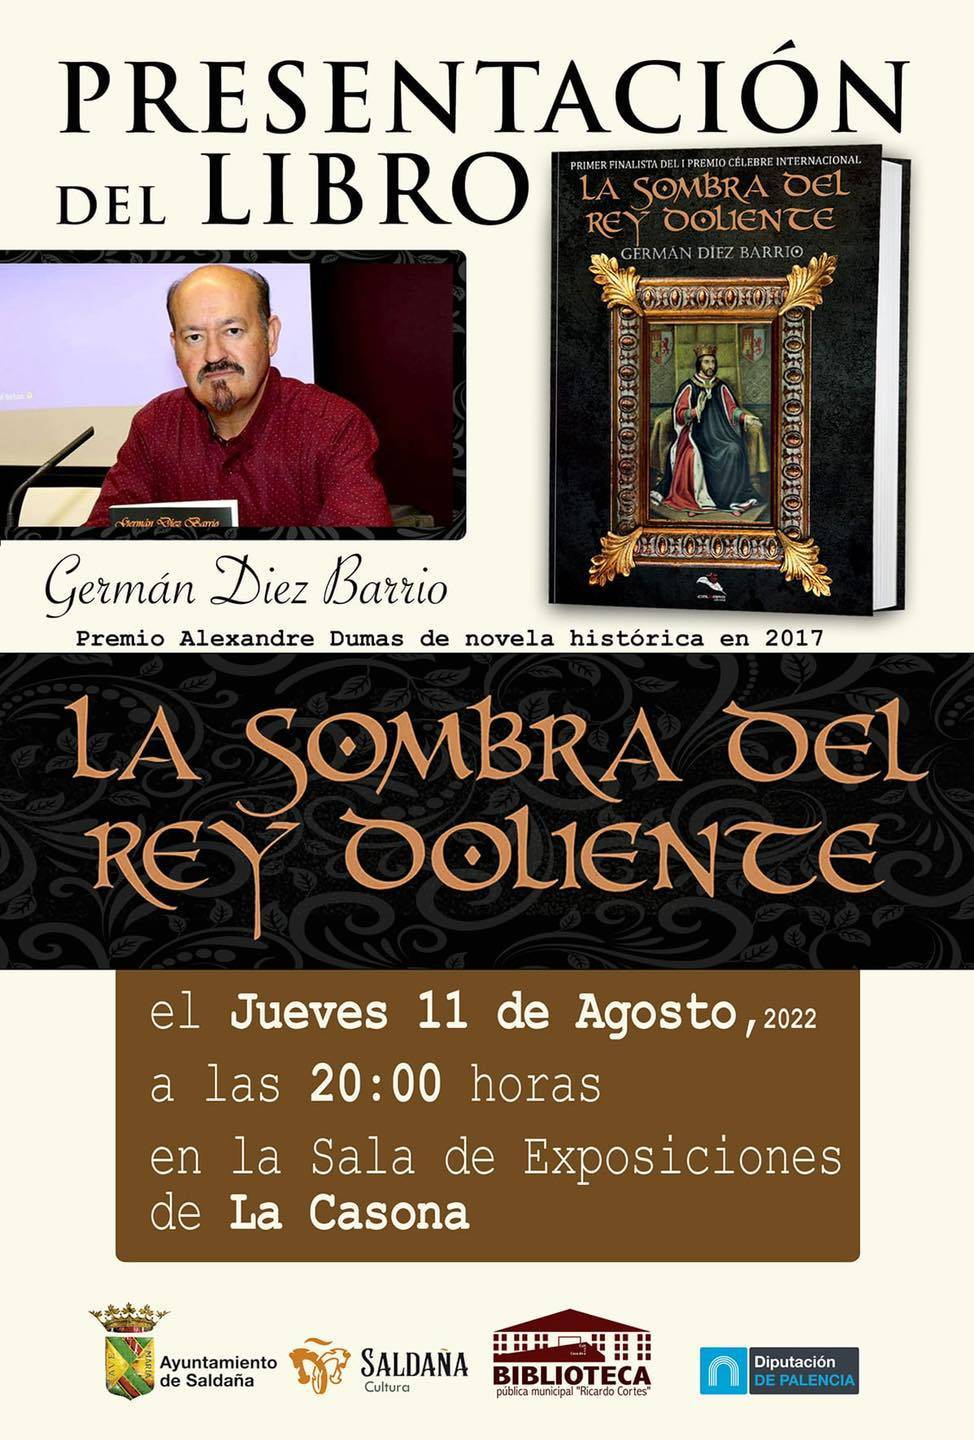 Presentación del libro 'La sombra del rey doliente' (2022) - Saldaña (Palencia)